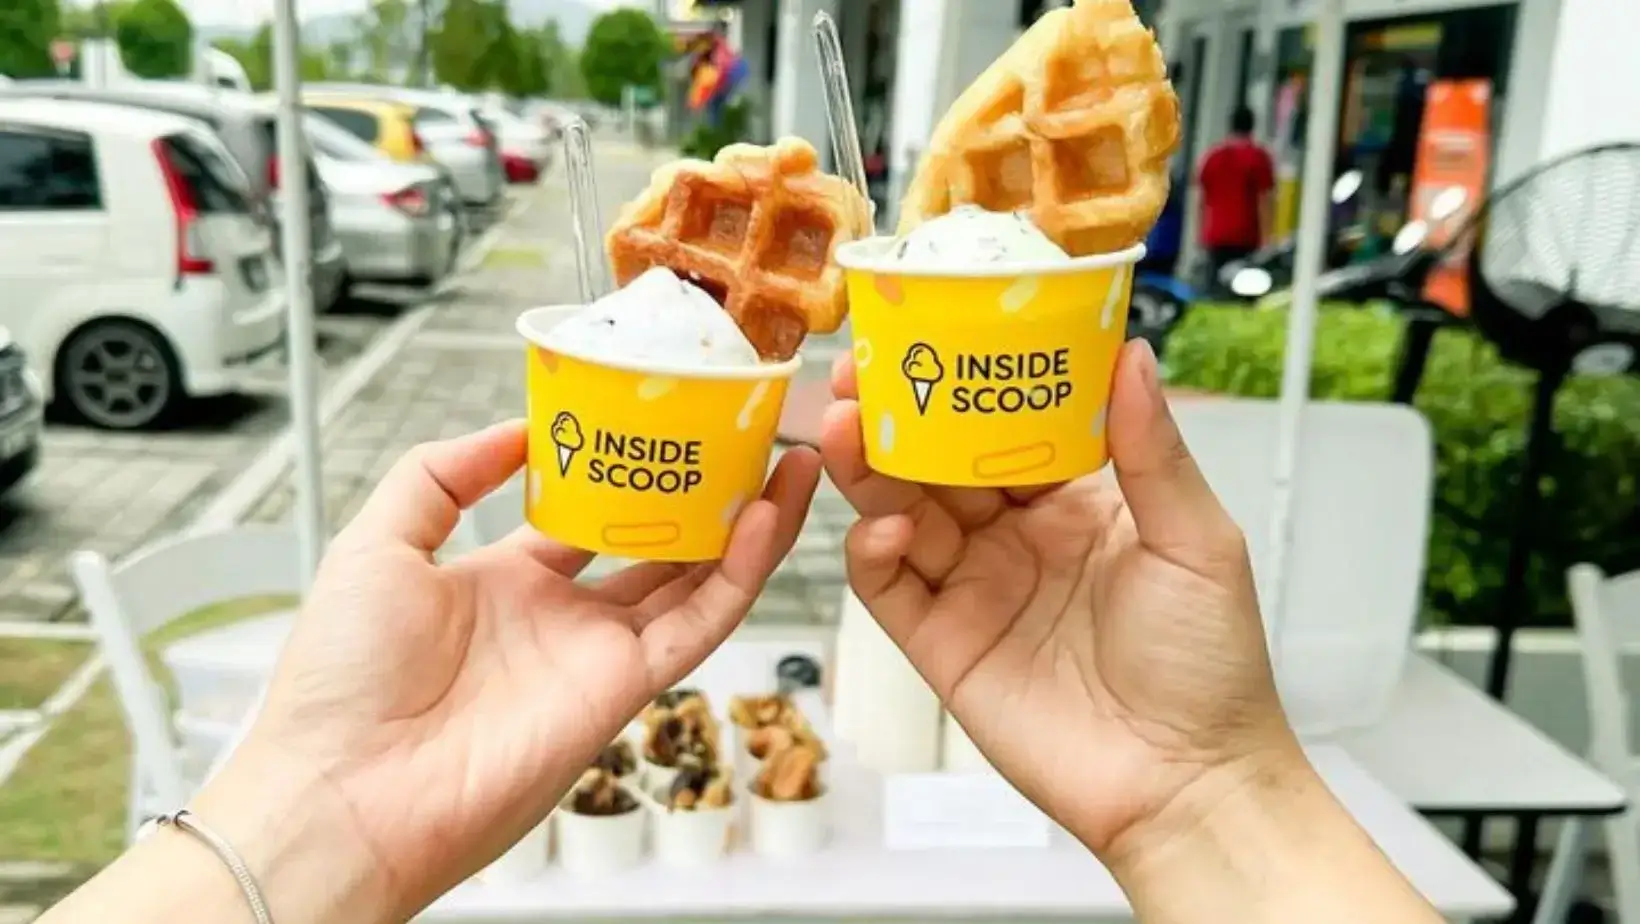 Inside scoop ice cream cups Malaysia